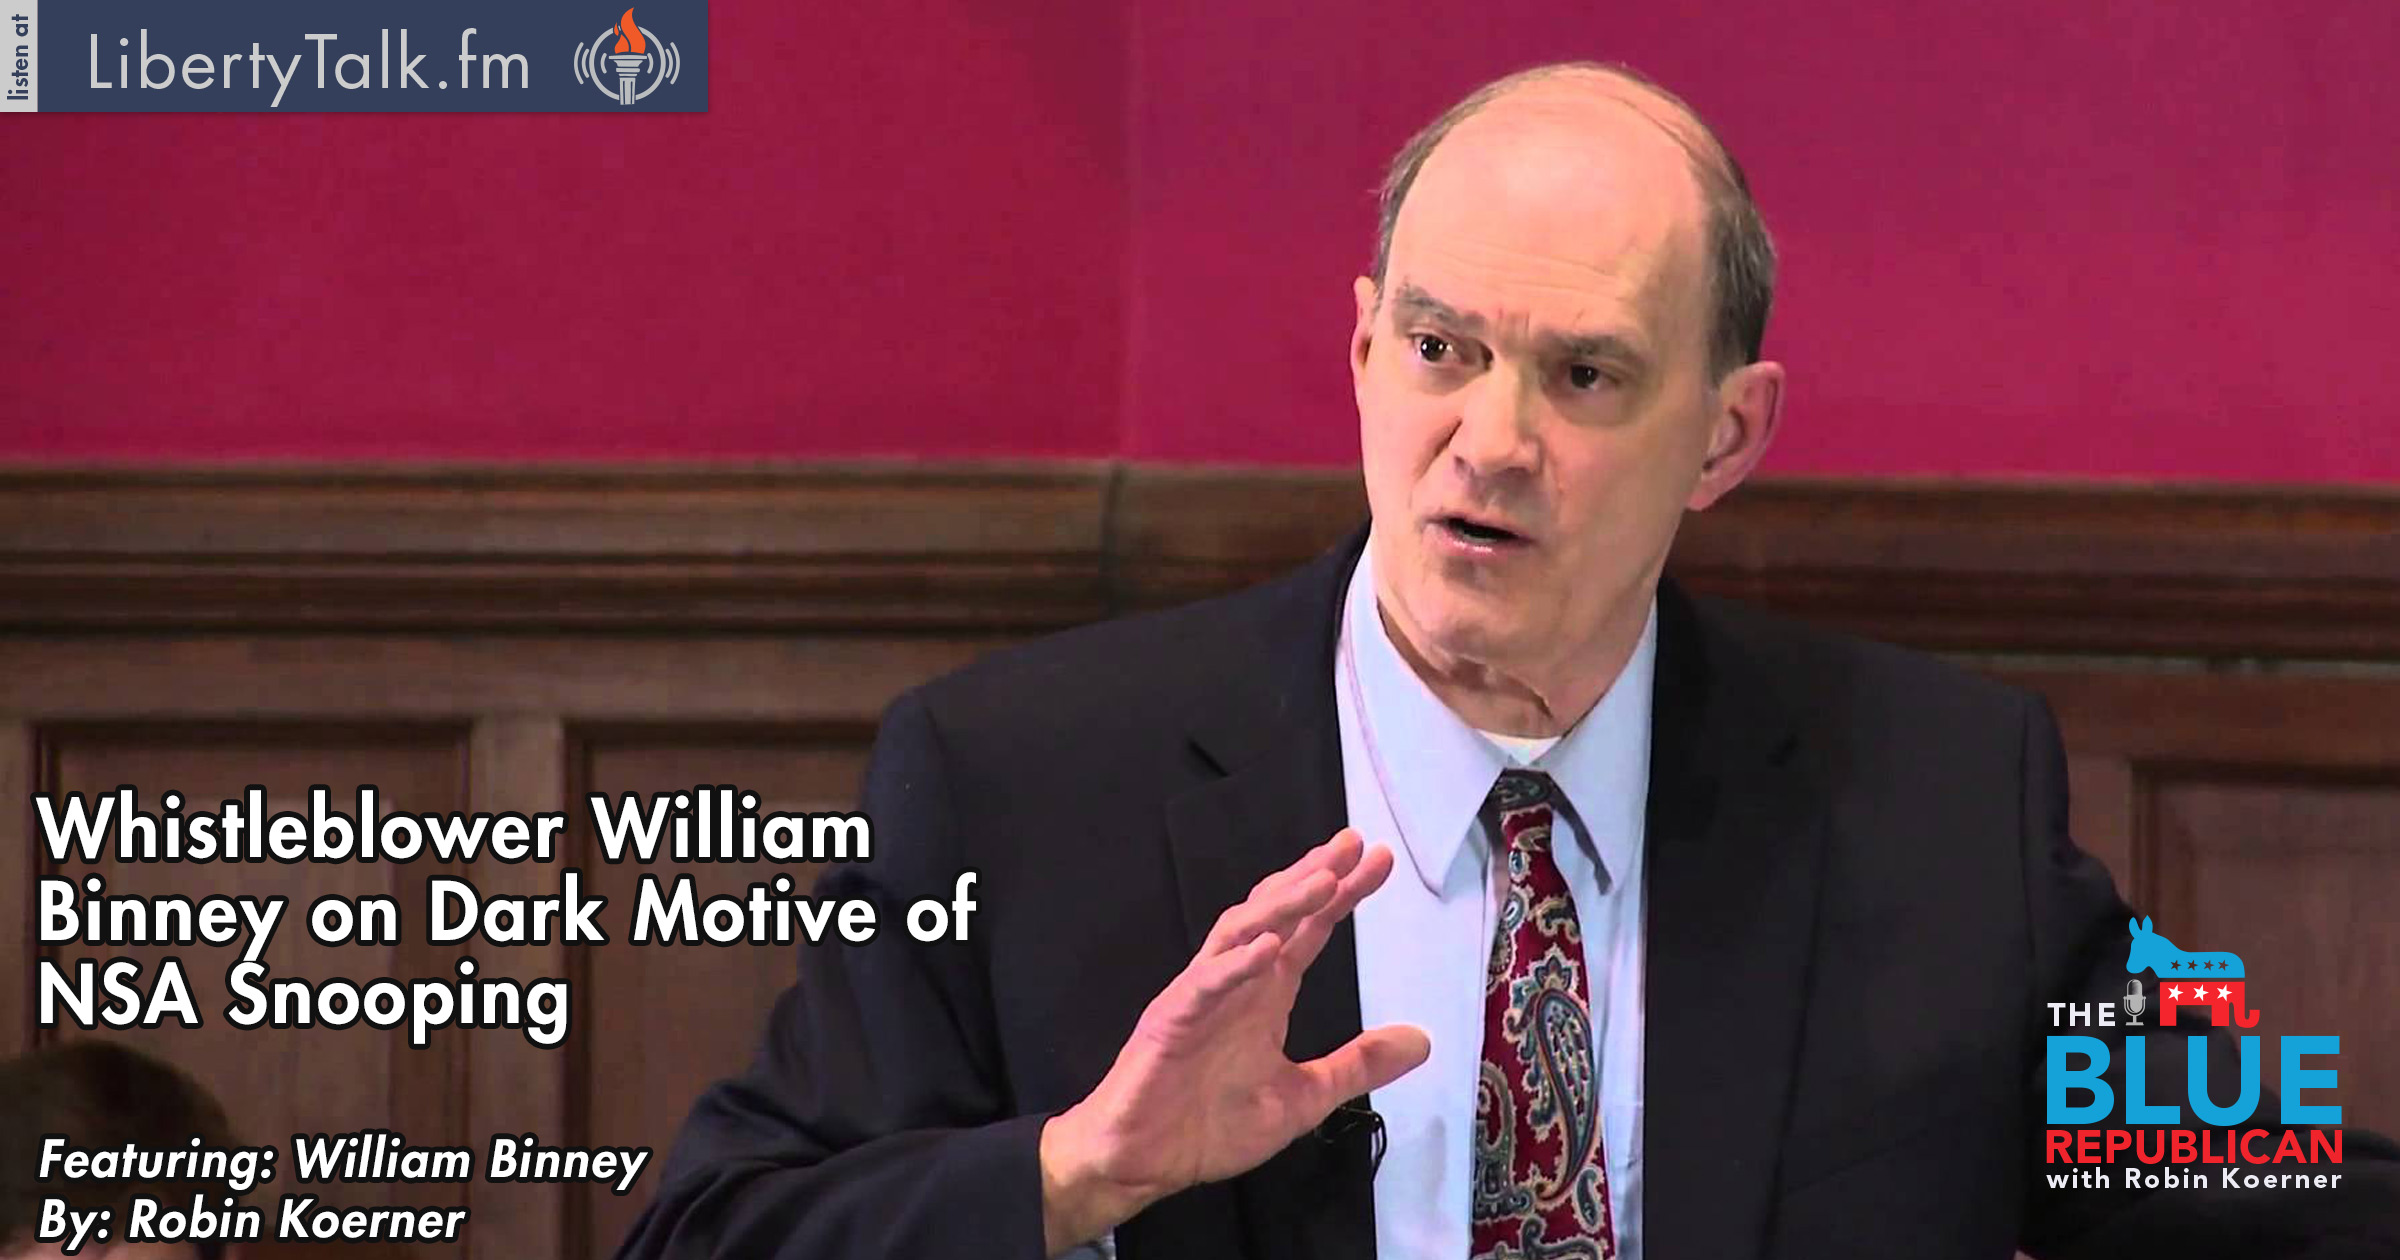 Whistleblower William Binney on NSA Dark Motivations Behind Spying FEATURED